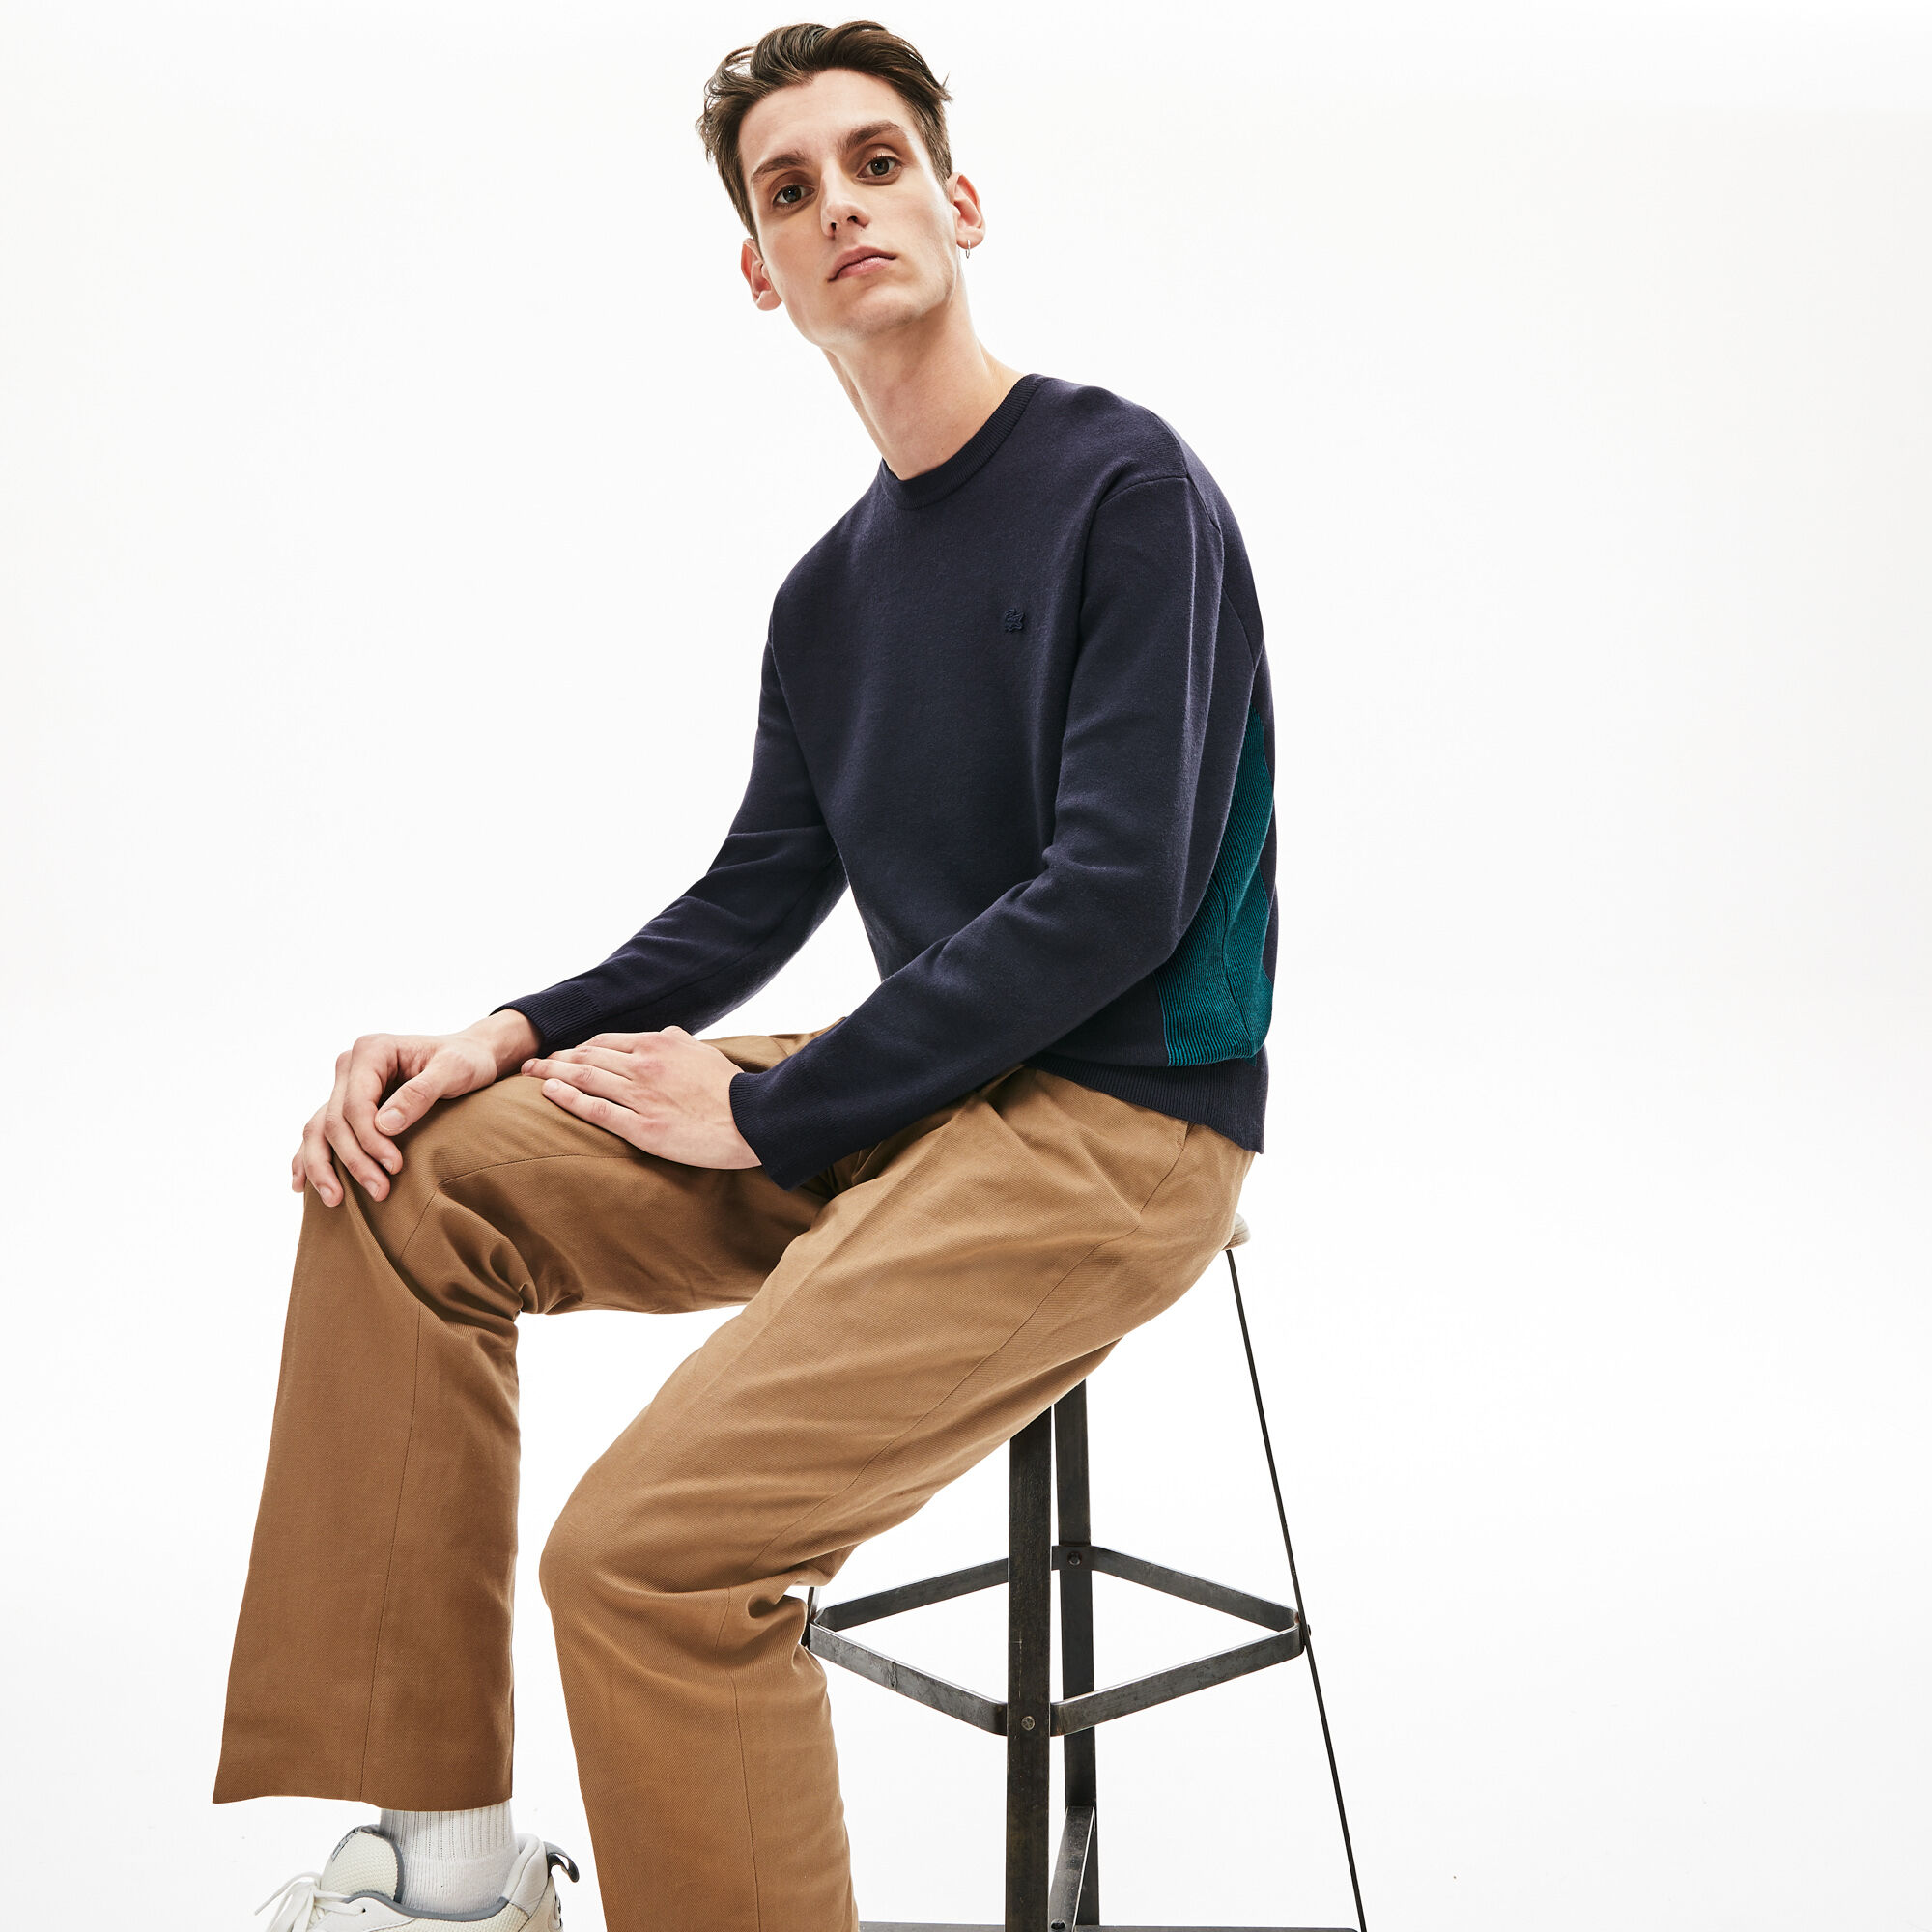 Men's Contrast Effects Knit Sweater